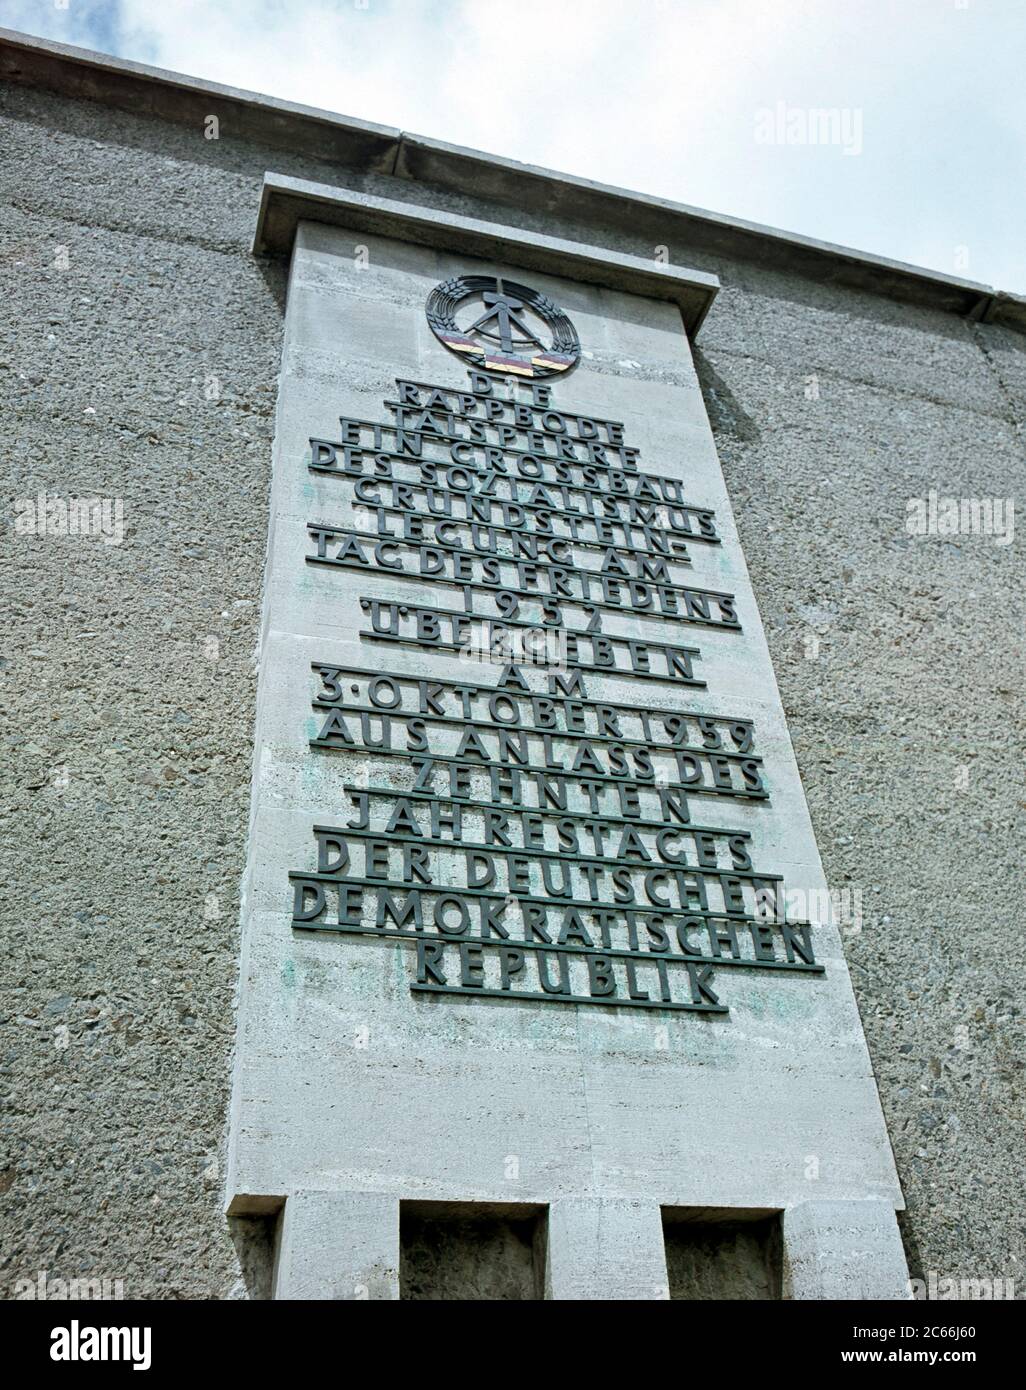 Stele commemorativa al muro della diga con il seguente testo, Rappbode Dam, una grande struttura costruita dal socialismo, la pietra di fondazione è stata posata nel giorno della pace nel 1952, è stata consegnata il 3 ottobre 1959 in occasione del 10 ° anniversario della Repubblica democratica tedesca Foto Stock